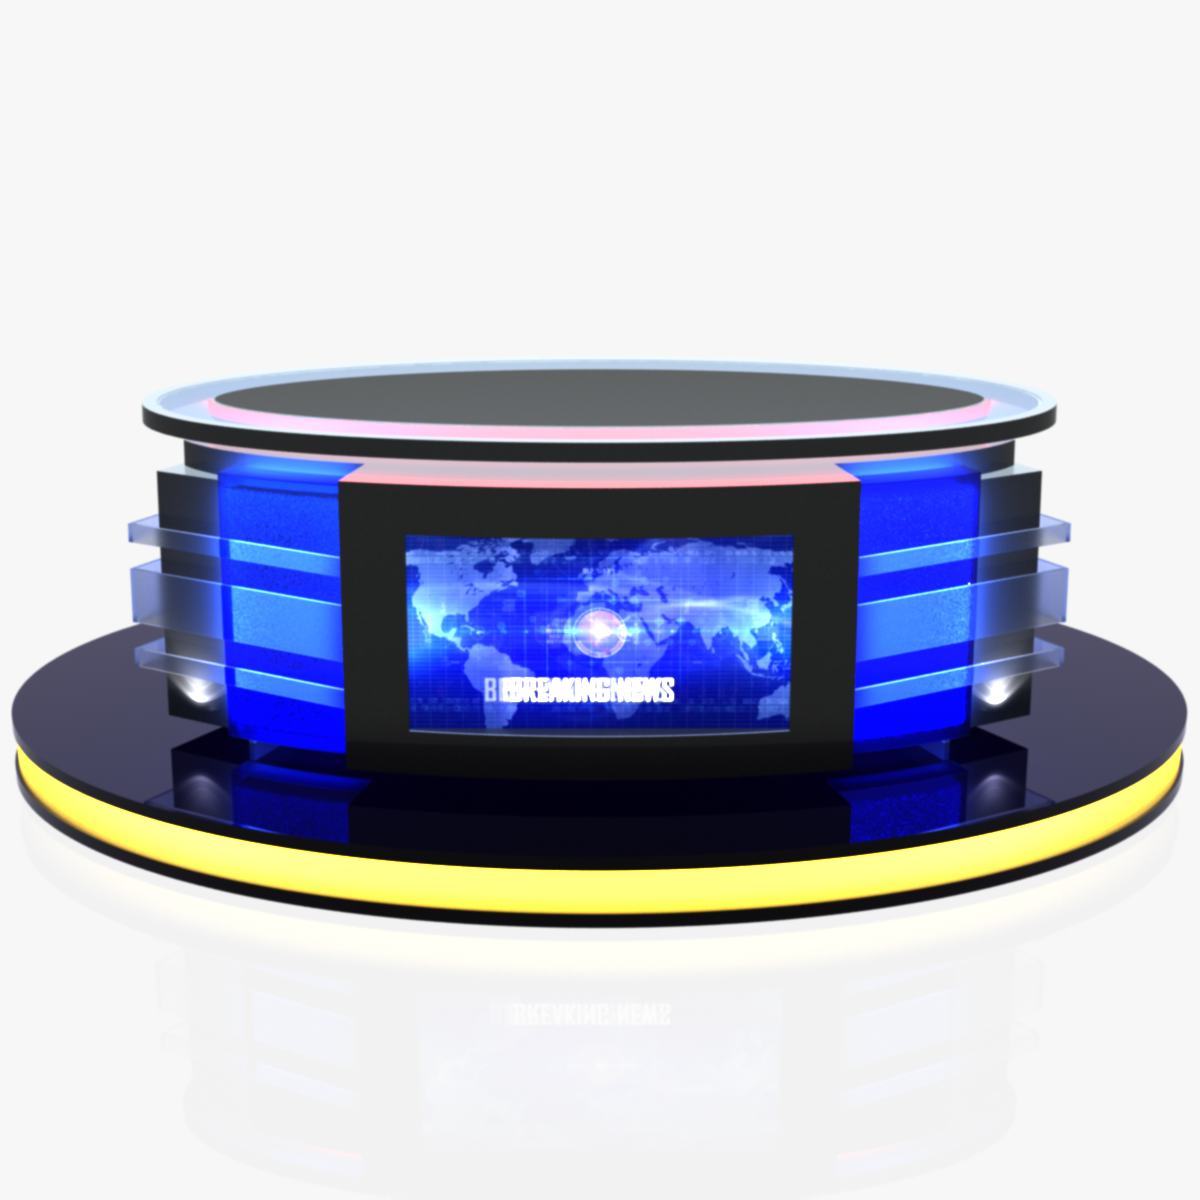 news desk 3d model